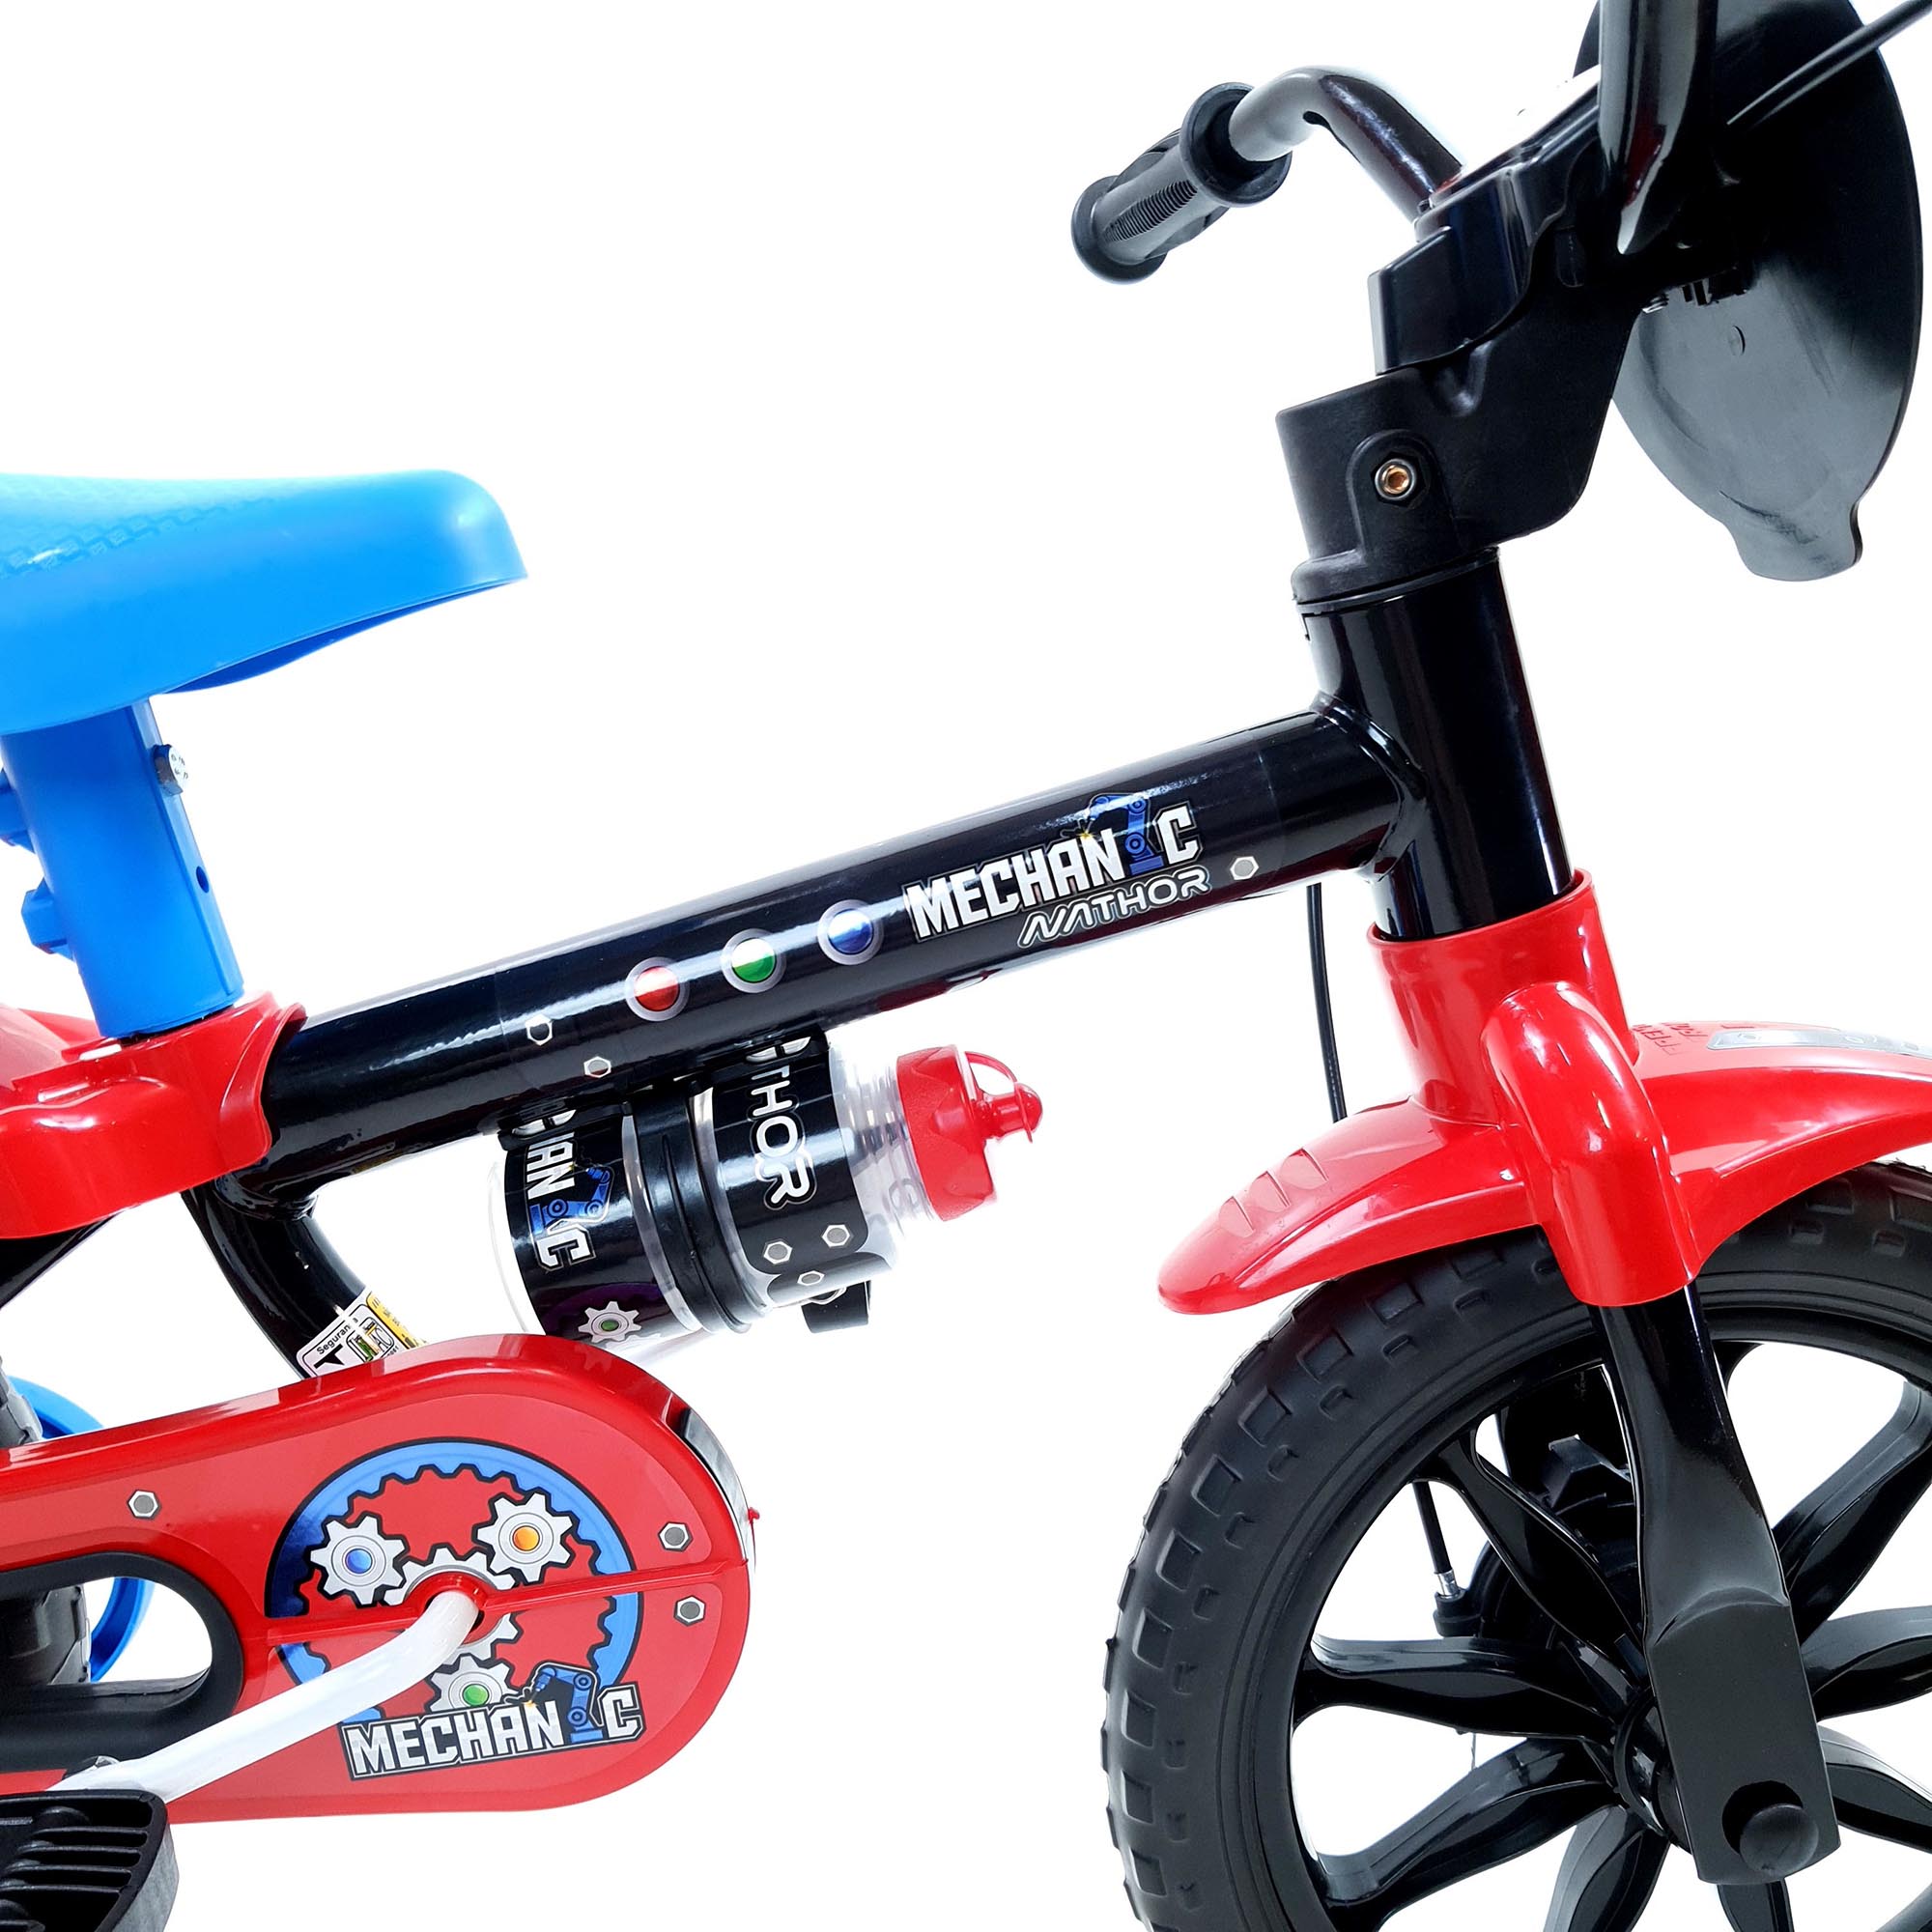 Bicicleta Nathor Infantil Aro 12 Masculino Mechanic Preto_Azul_Vermelho